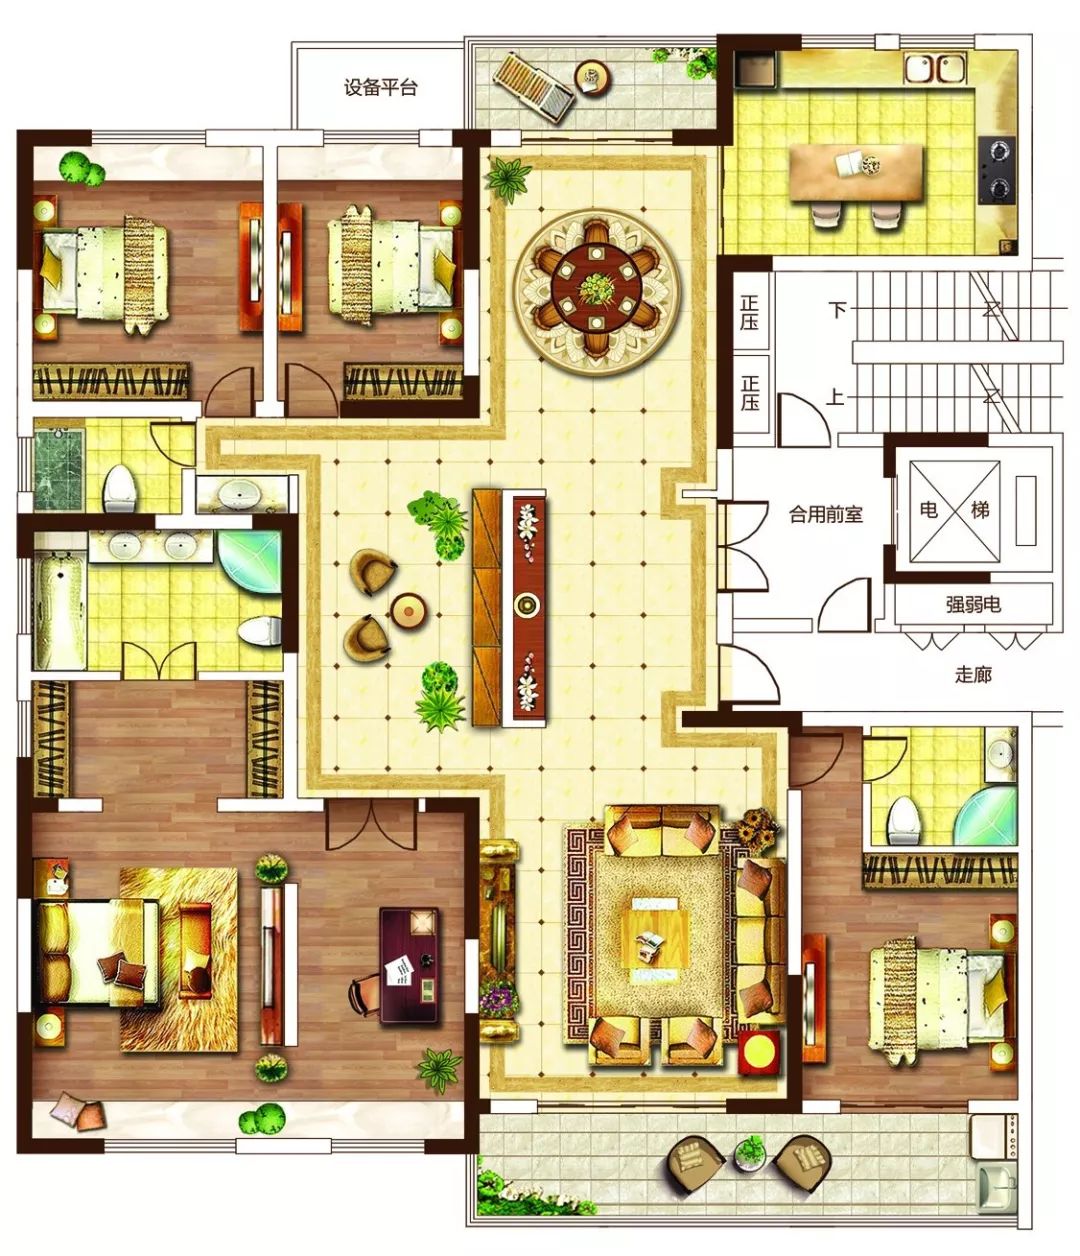 设计图分享 房屋风水格局设计图 > 龙族幻想房屋设计图